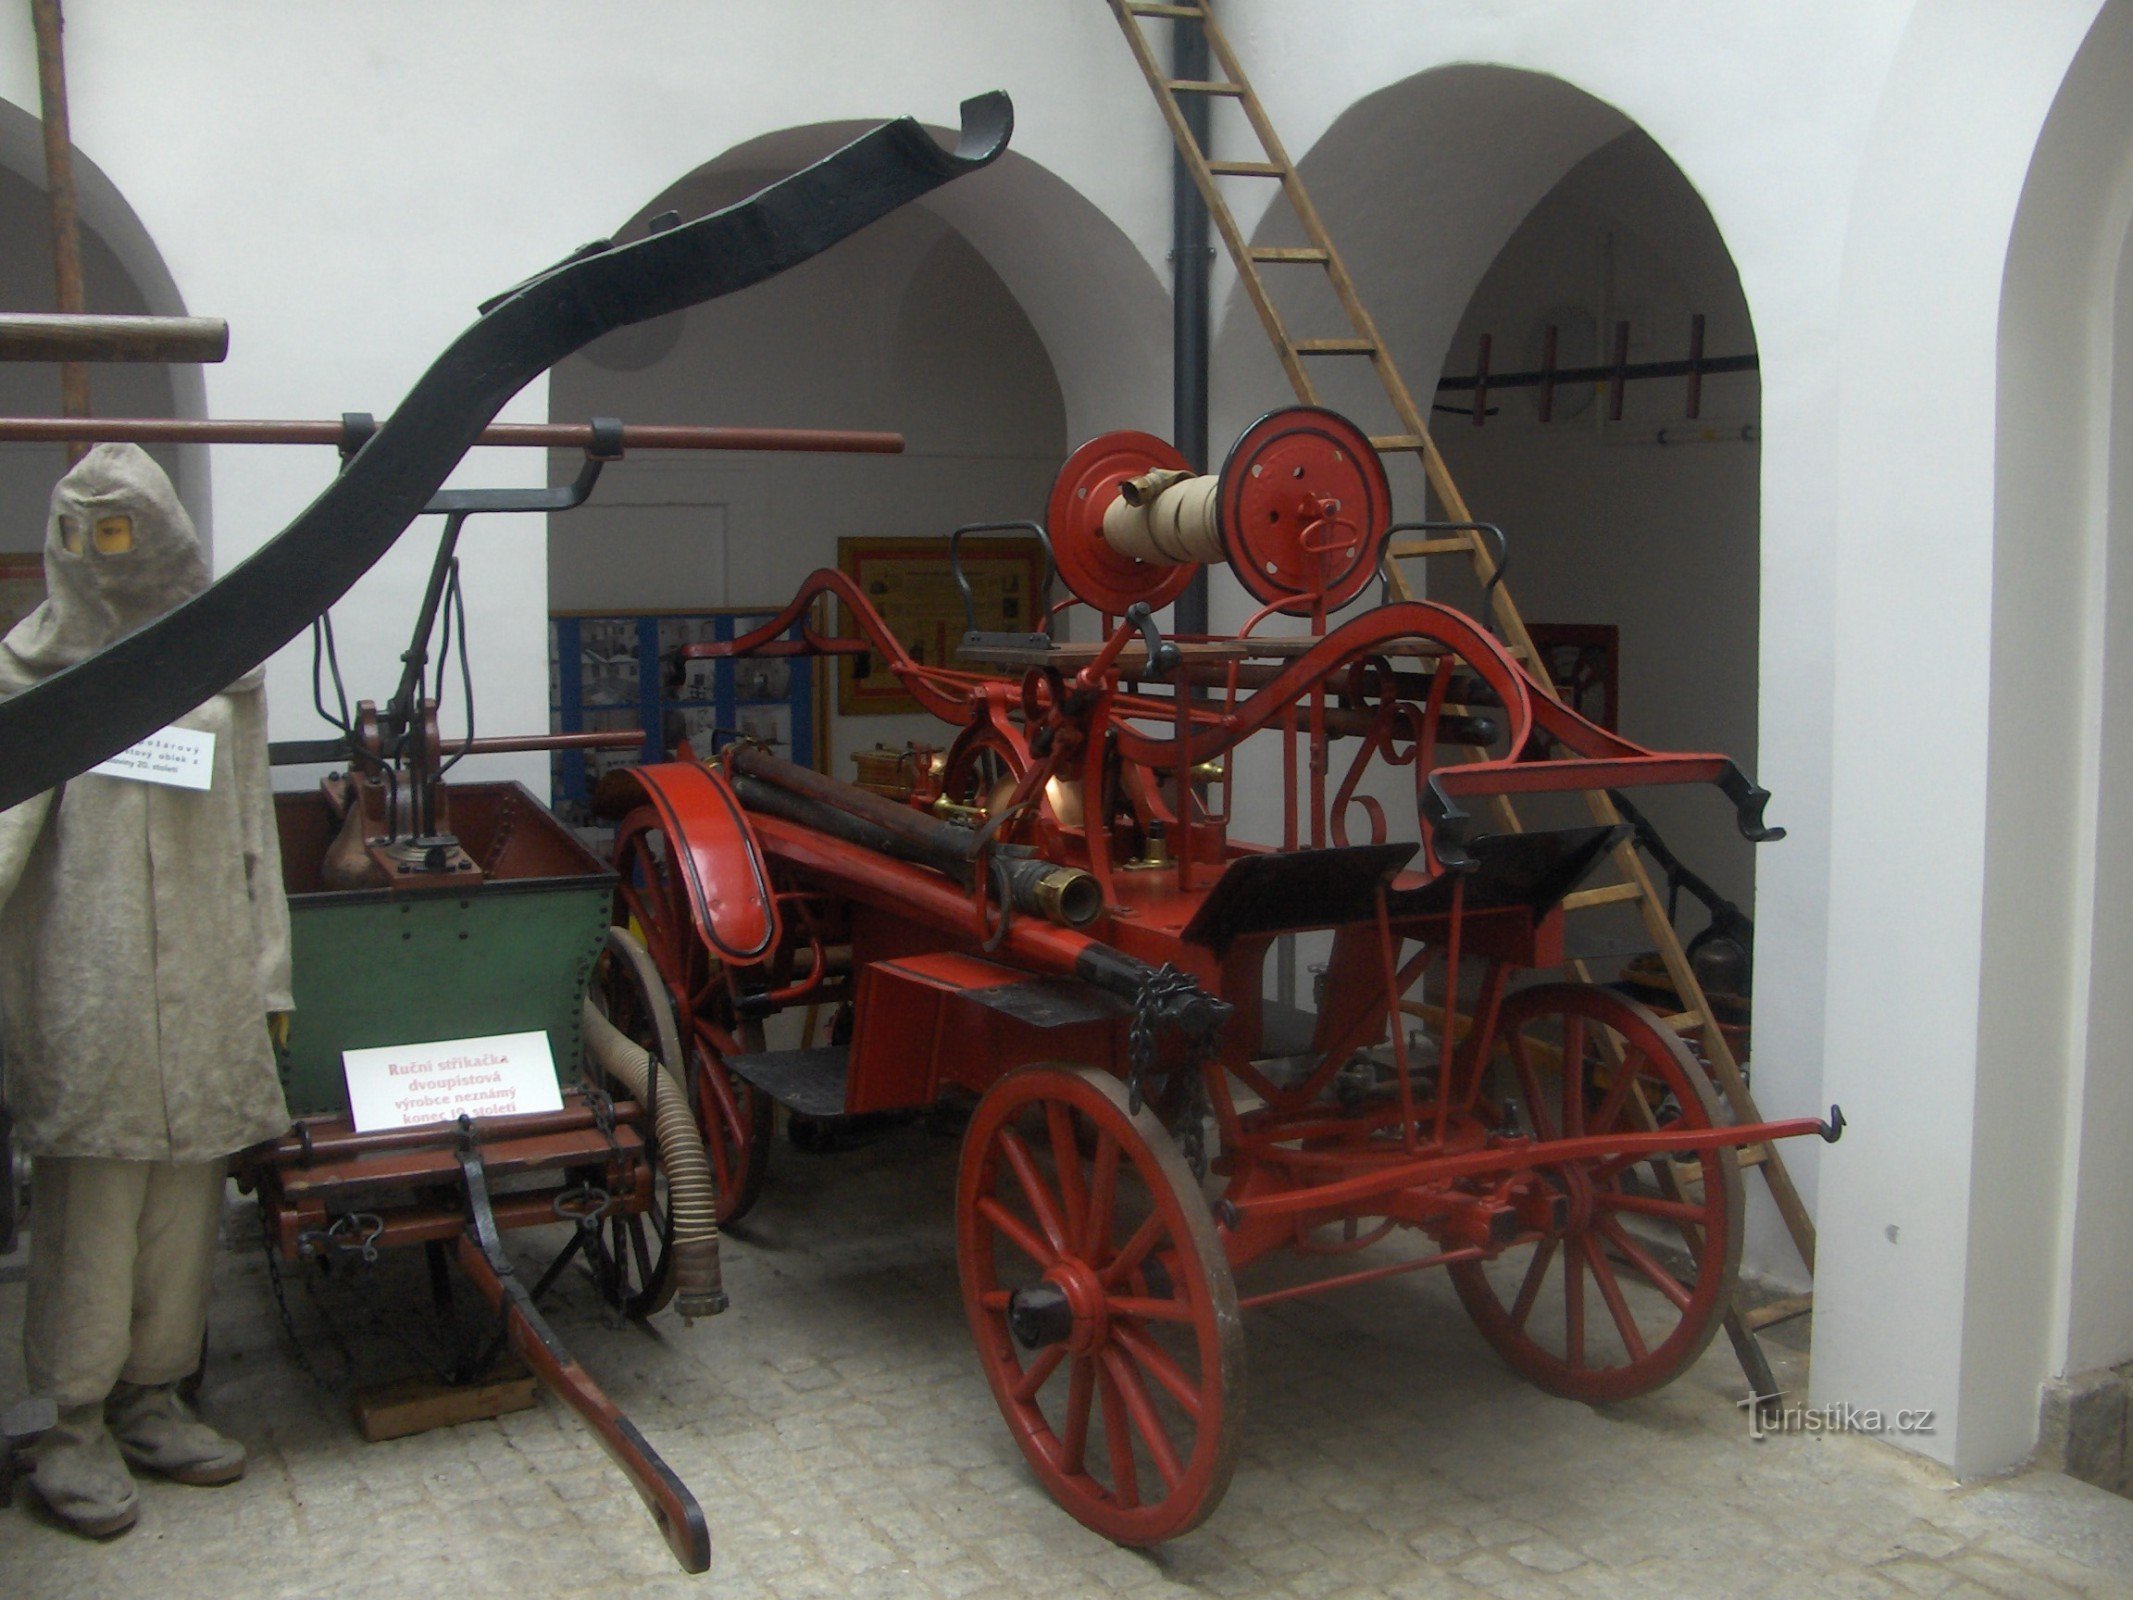 Muzeul Pompierilor din Krupka.